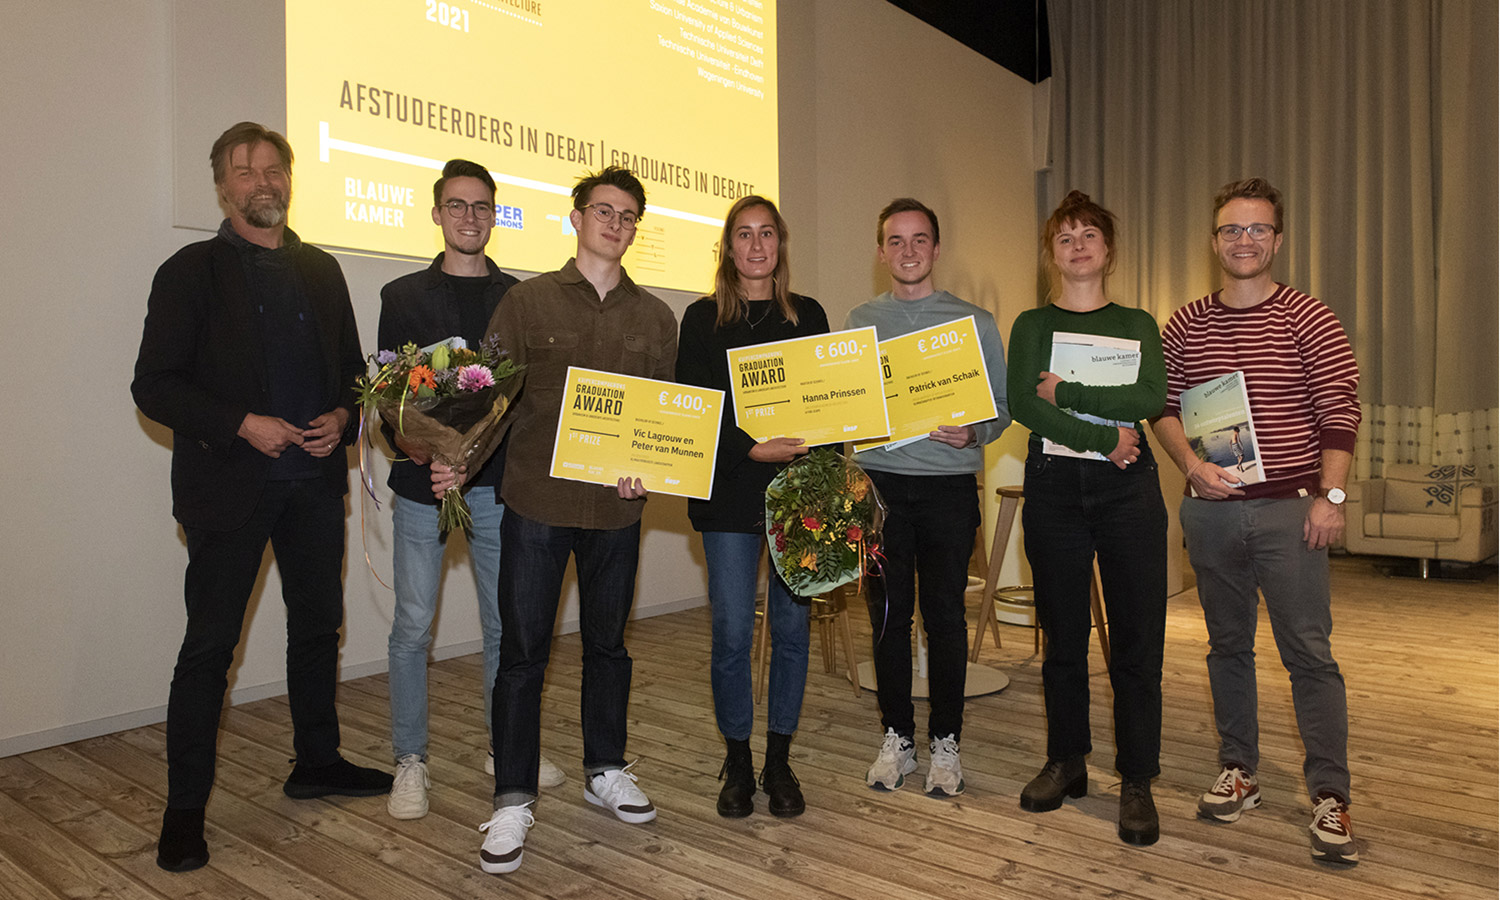 Alle winnaars op de foto, samen met juryvoorzitter Gijs van den Boomen (links) en hoofdredacteur van Blauwe Kamer Mark Hendriks.